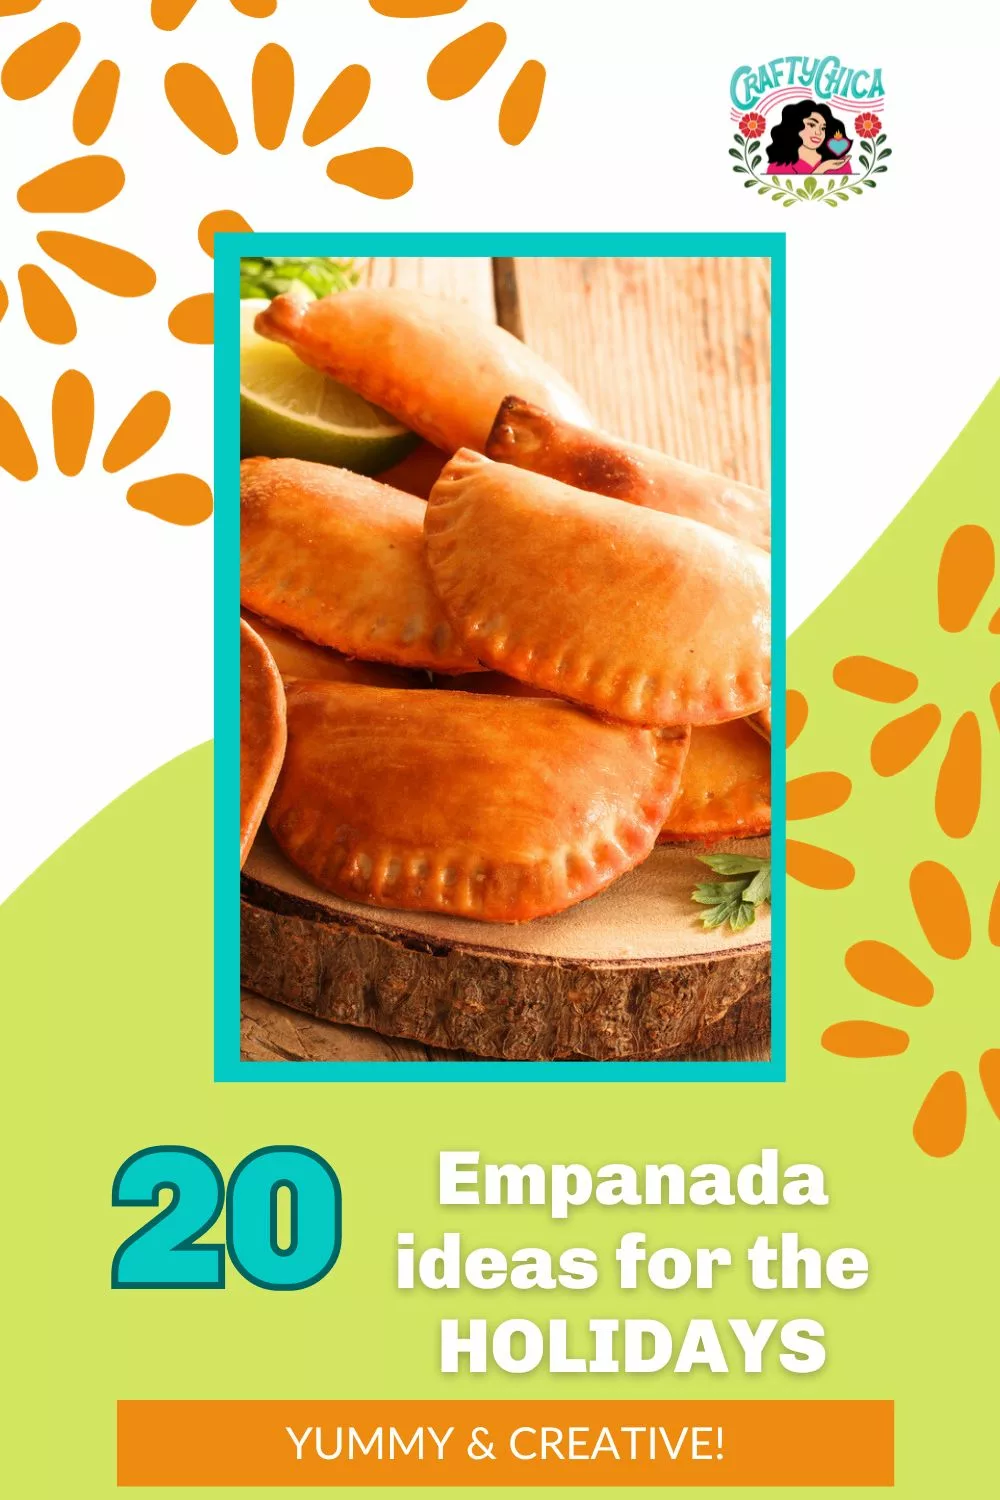 empanada ideas to serve for the holidays